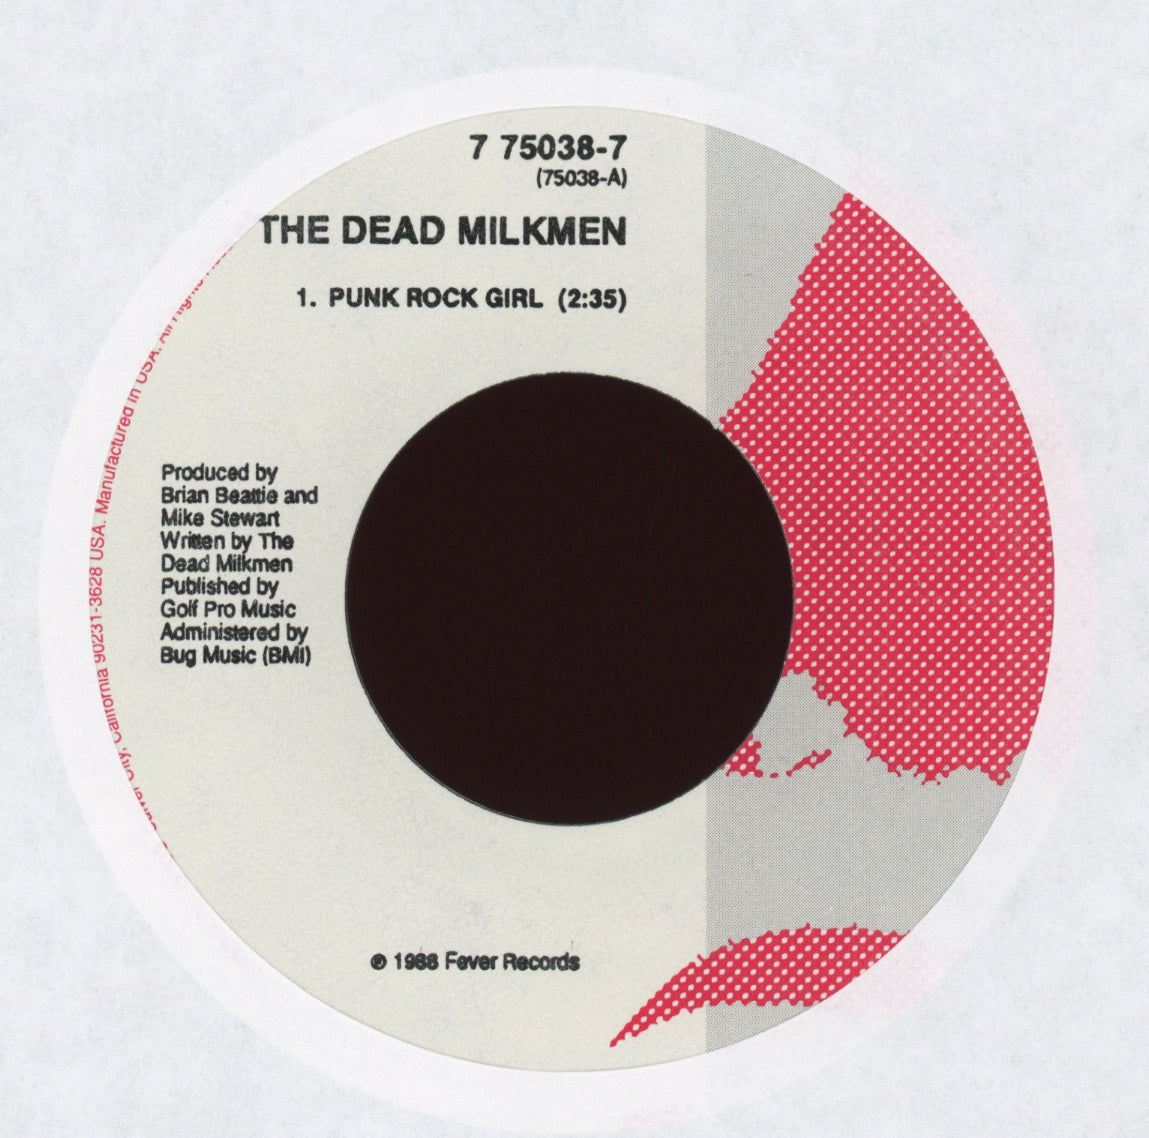 The Dead Milkmen - Punk Rock Girl on Enigma